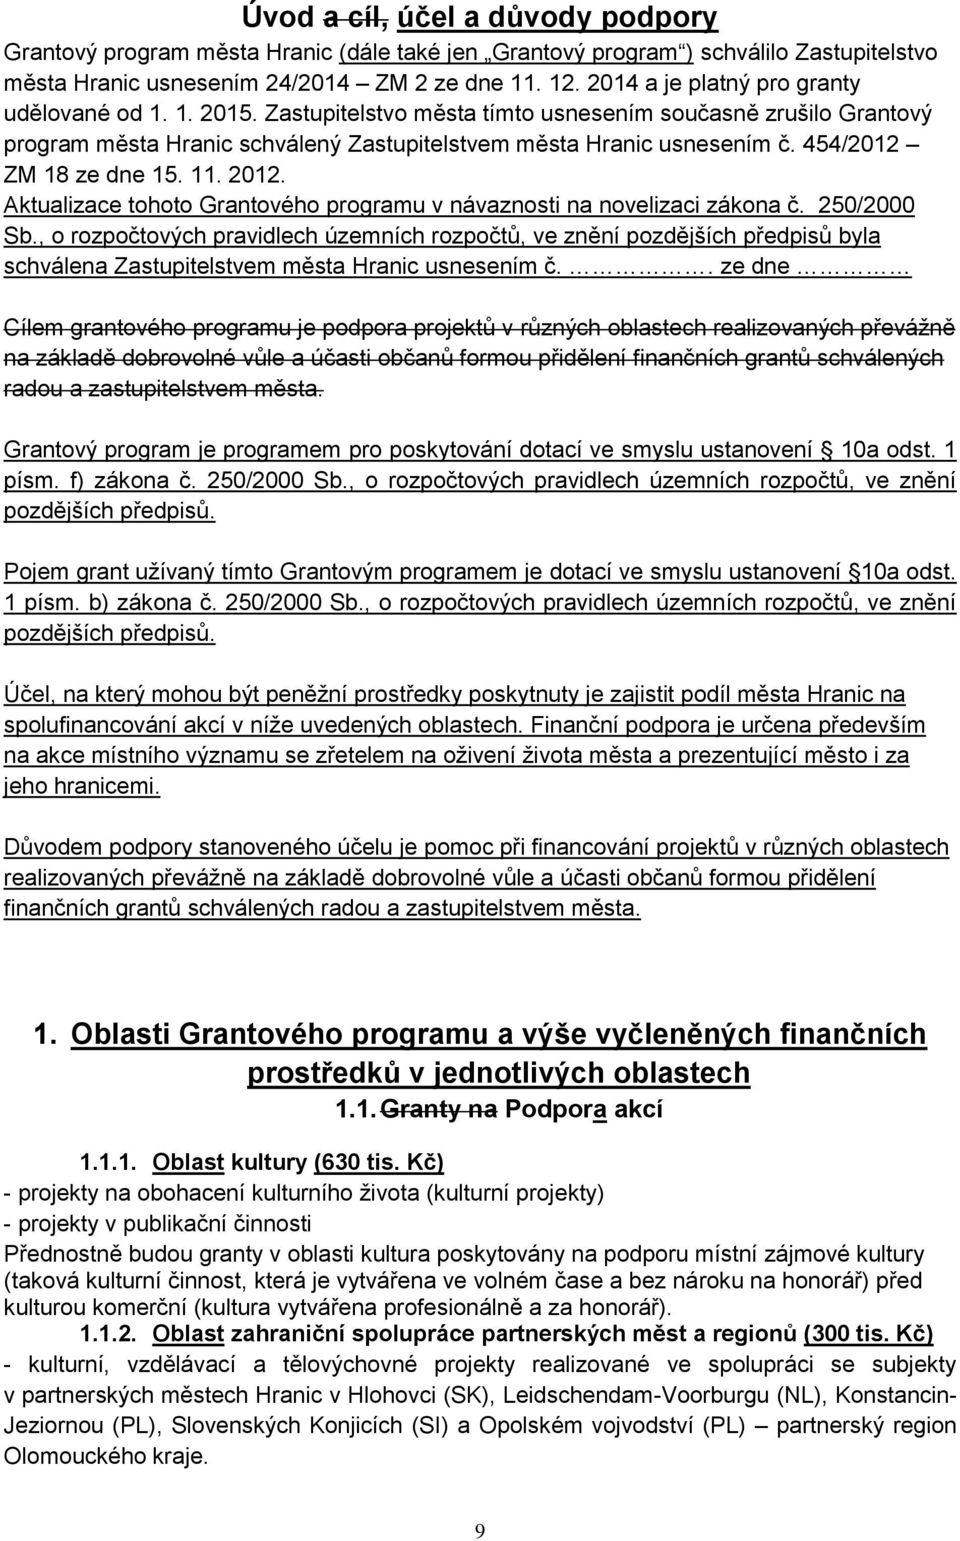 454/2012 ZM 18 ze dne 15. 11. 2012. Aktualizace tohoto Grantového programu v návaznosti na novelizaci zákona č. 250/2000 Sb.